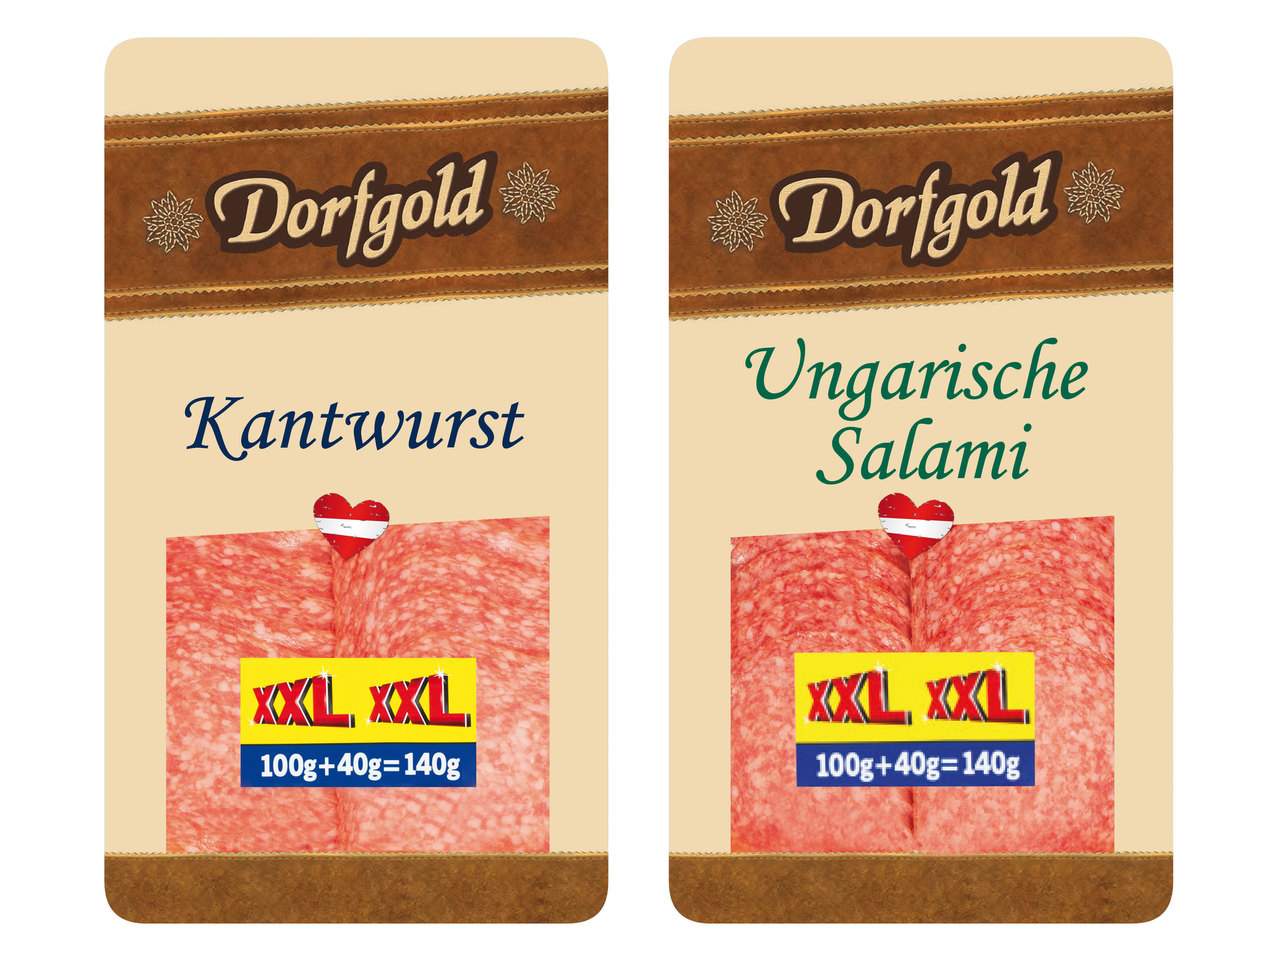 DORFGOLD Kantwurst/Ungarische Salami